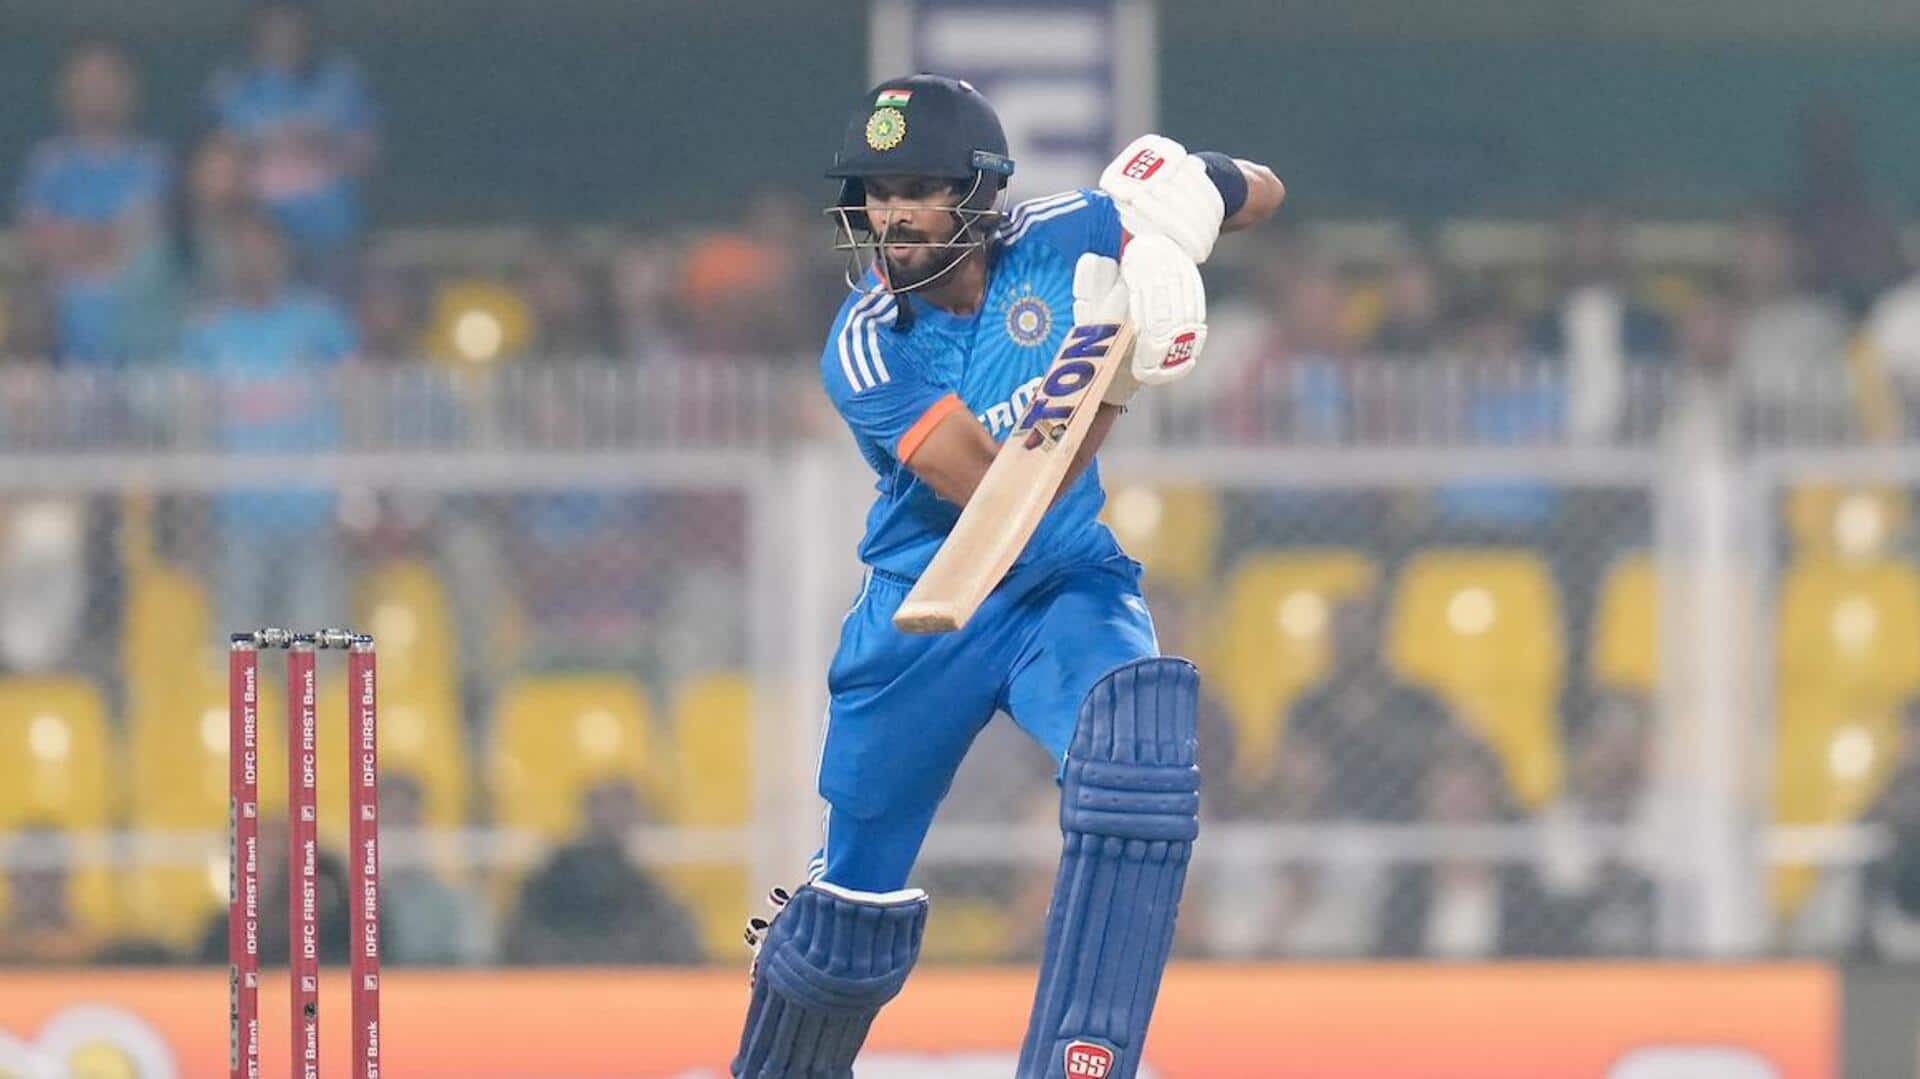 5वां टी-20: भारत के खिलाफ ऑस्ट्रेलिया ने टॉस जीतकर चुनी गेंदबाजी, जानिए प्लेइंग इलेवन 